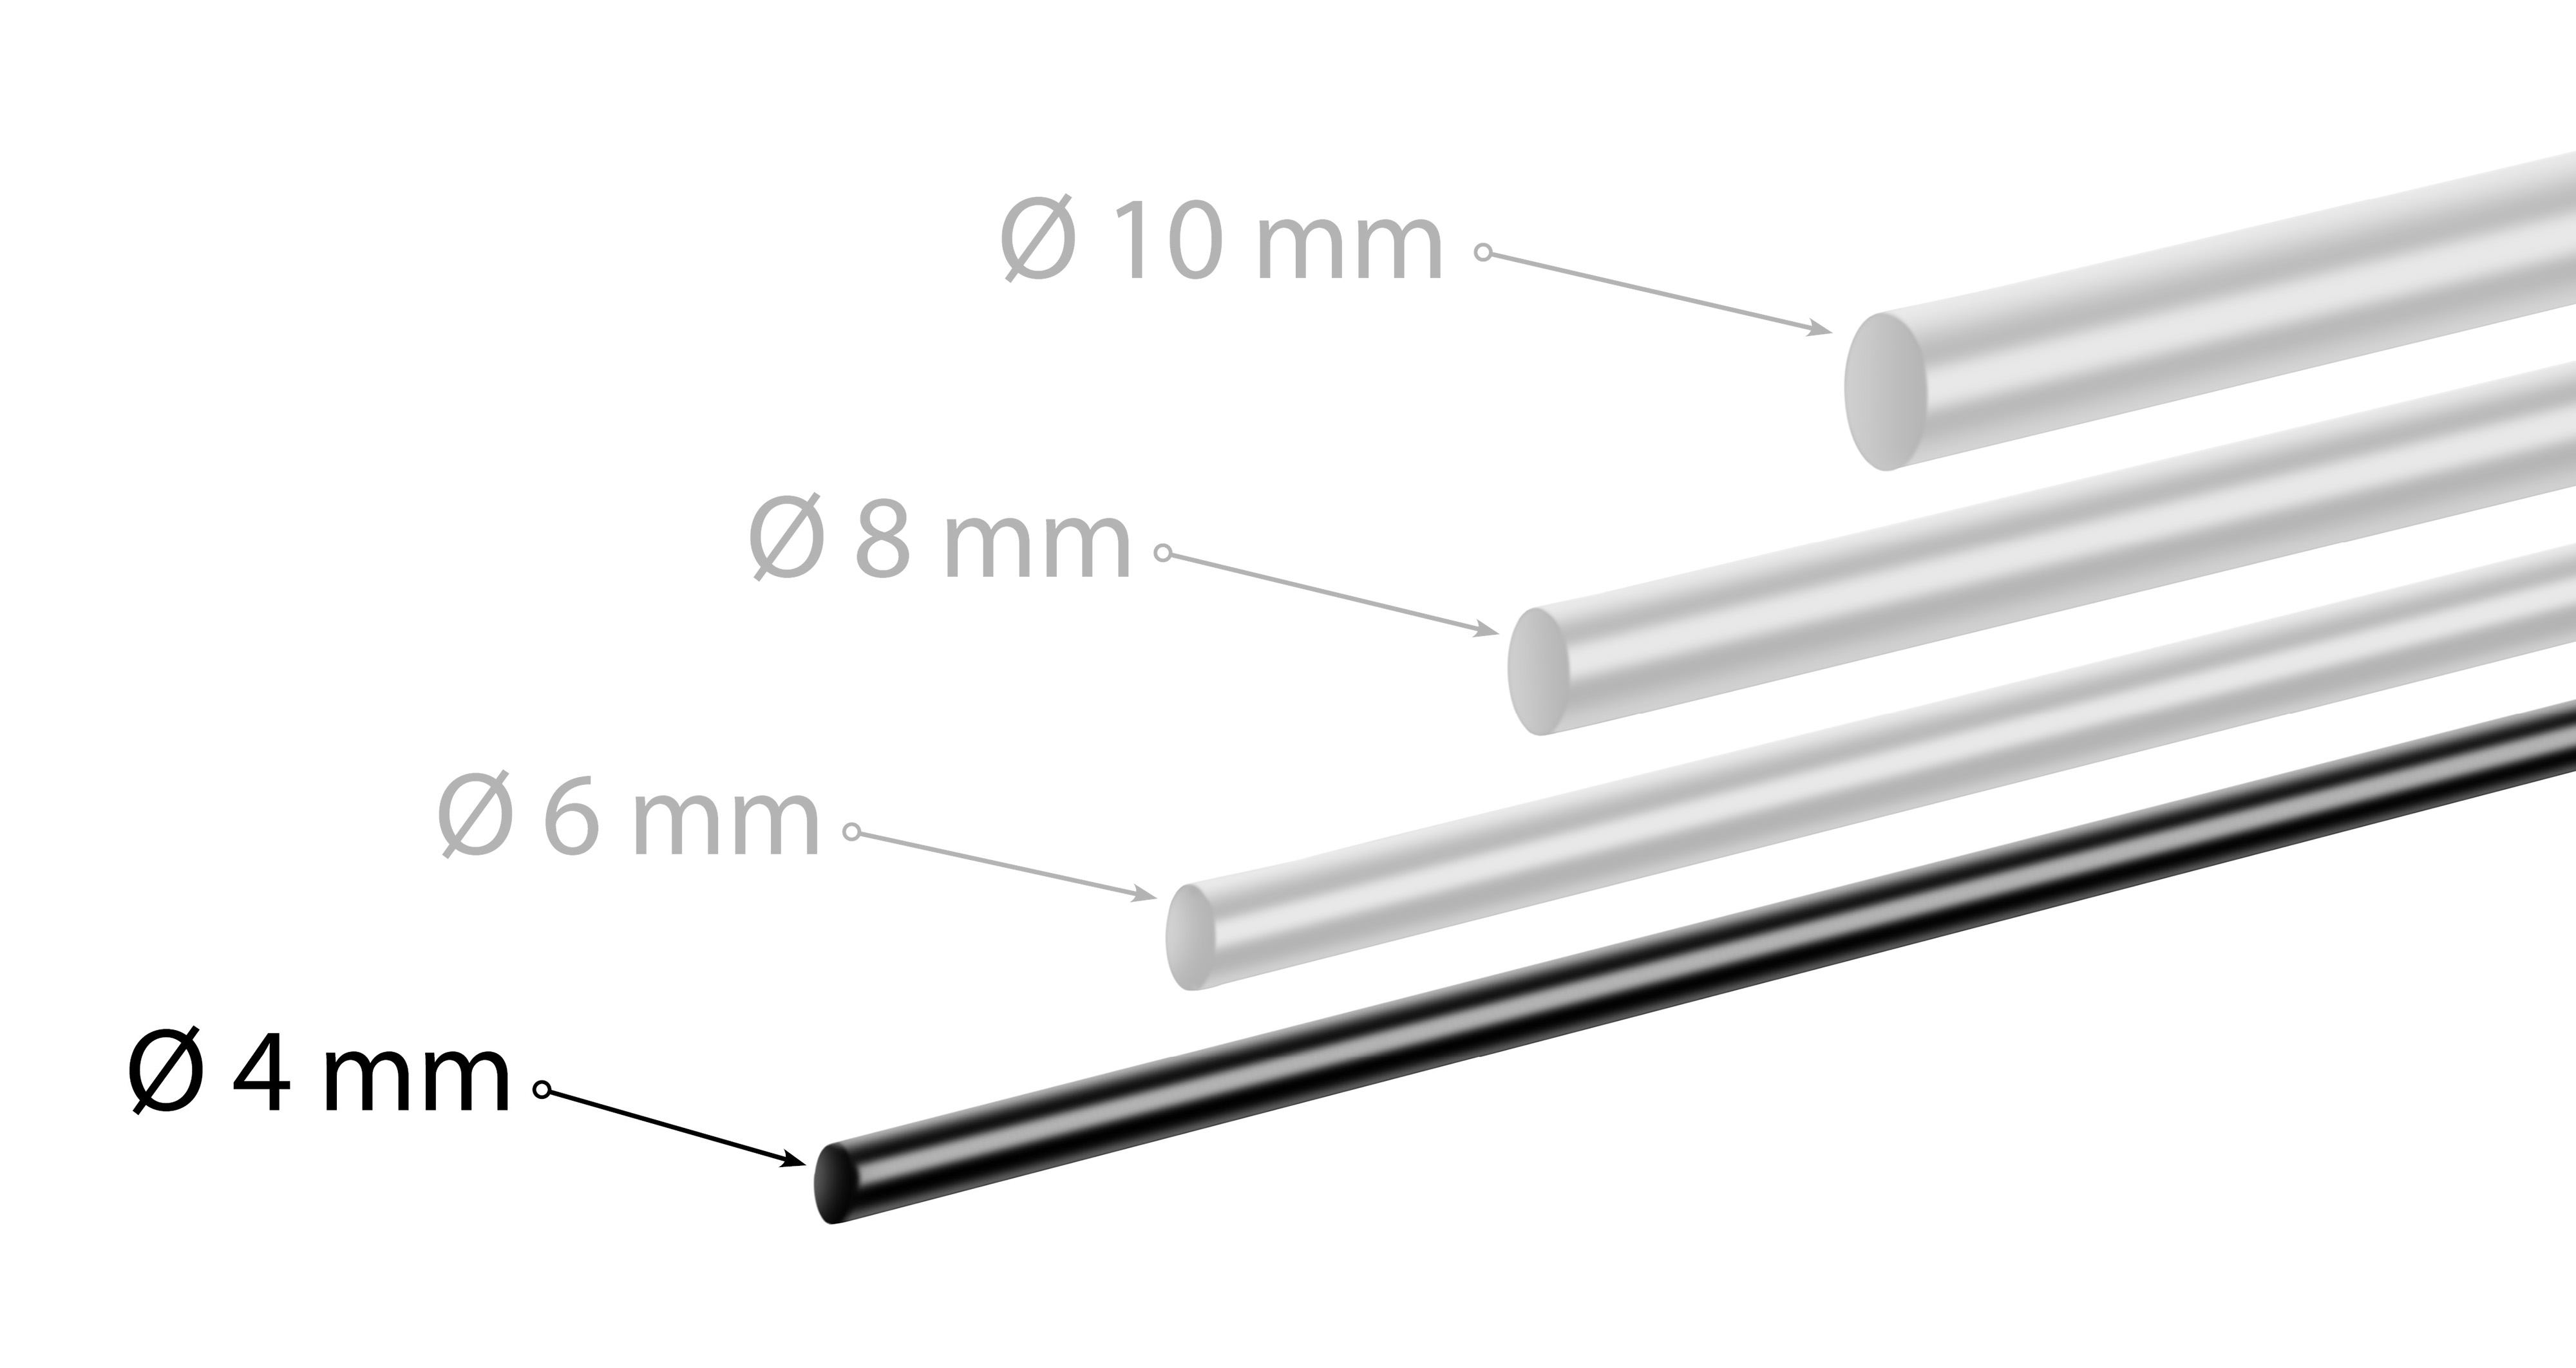 Poppstar Butylrundschnur Klebeband (5m x 4mm) Dichtband, schwarz, selbstklebend